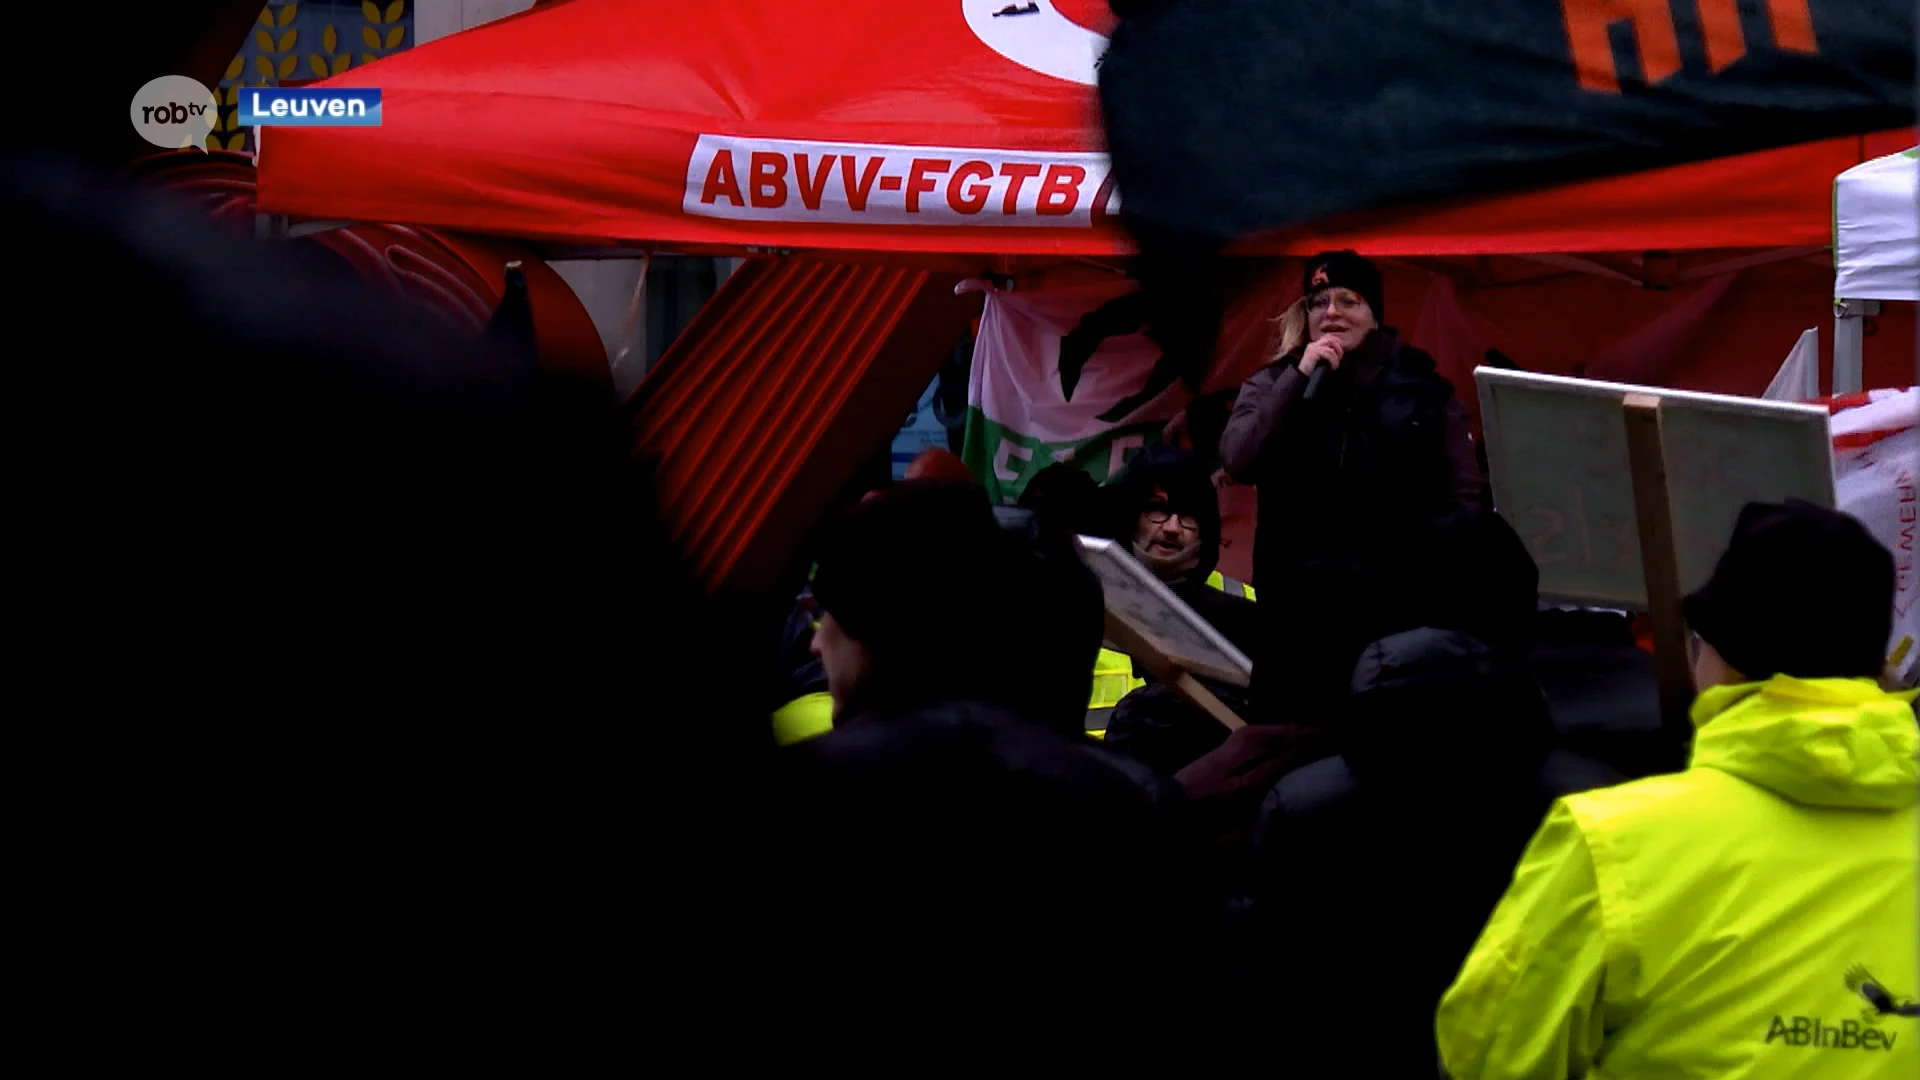 Na vele acties van Leuvense arbeiders protesteren nu ook Duitse AB Inbev-arbeiders aan hoofdkwartier in Leuven